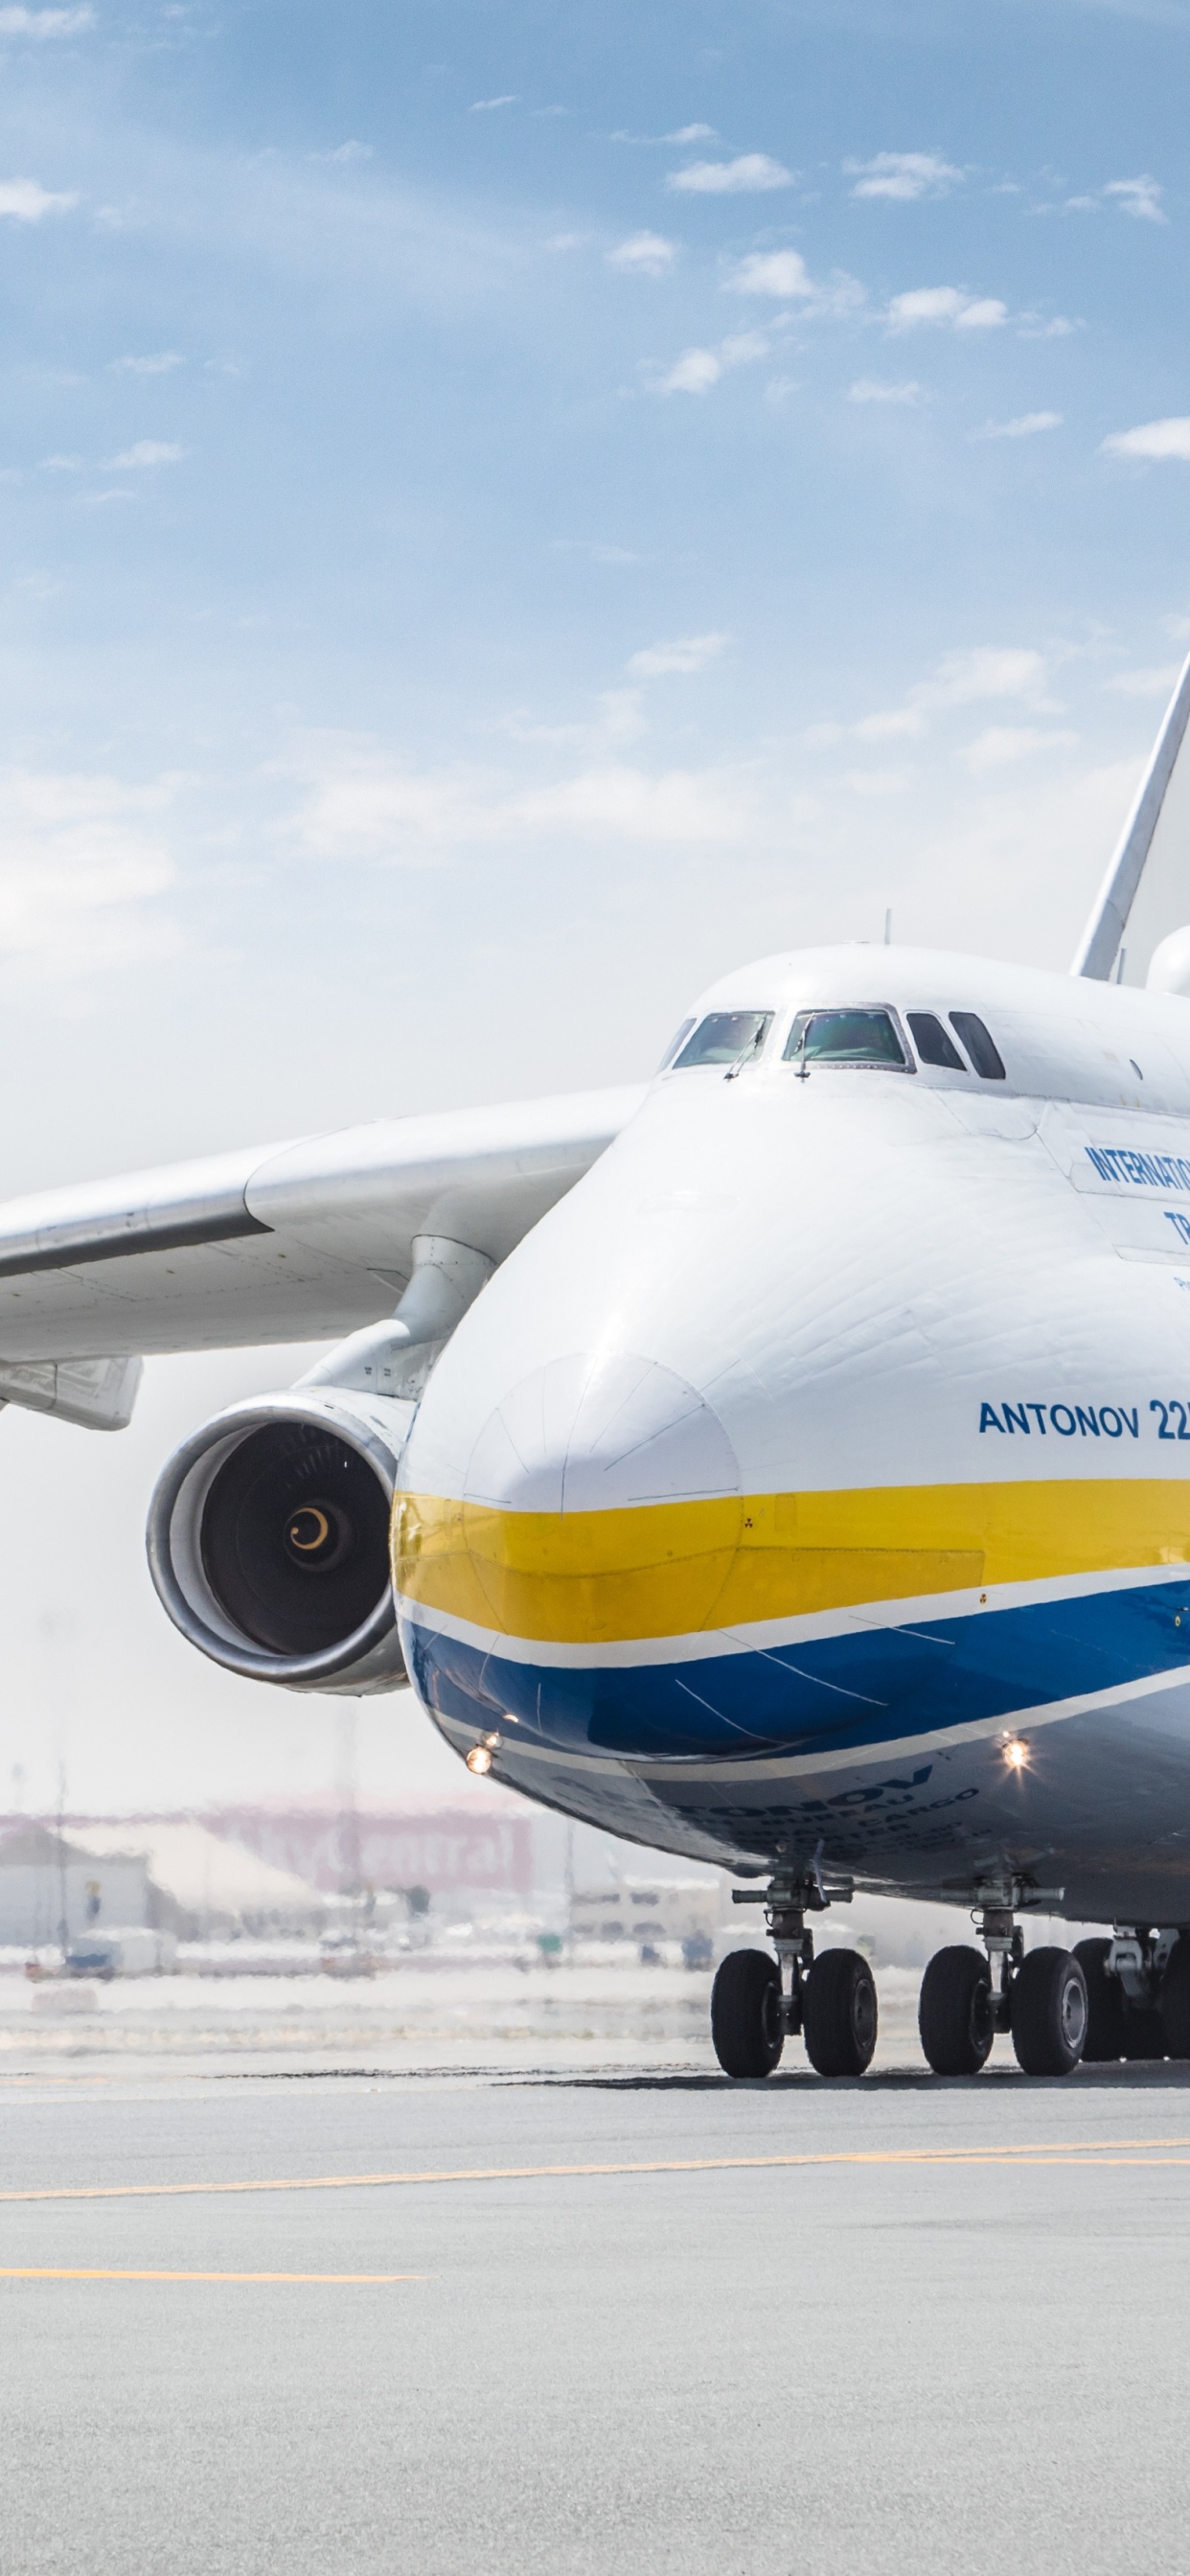 飞机上的货物, 客机, 安东诺夫, 航空航天工程, 航空公司 壁纸 1242x2688 允许